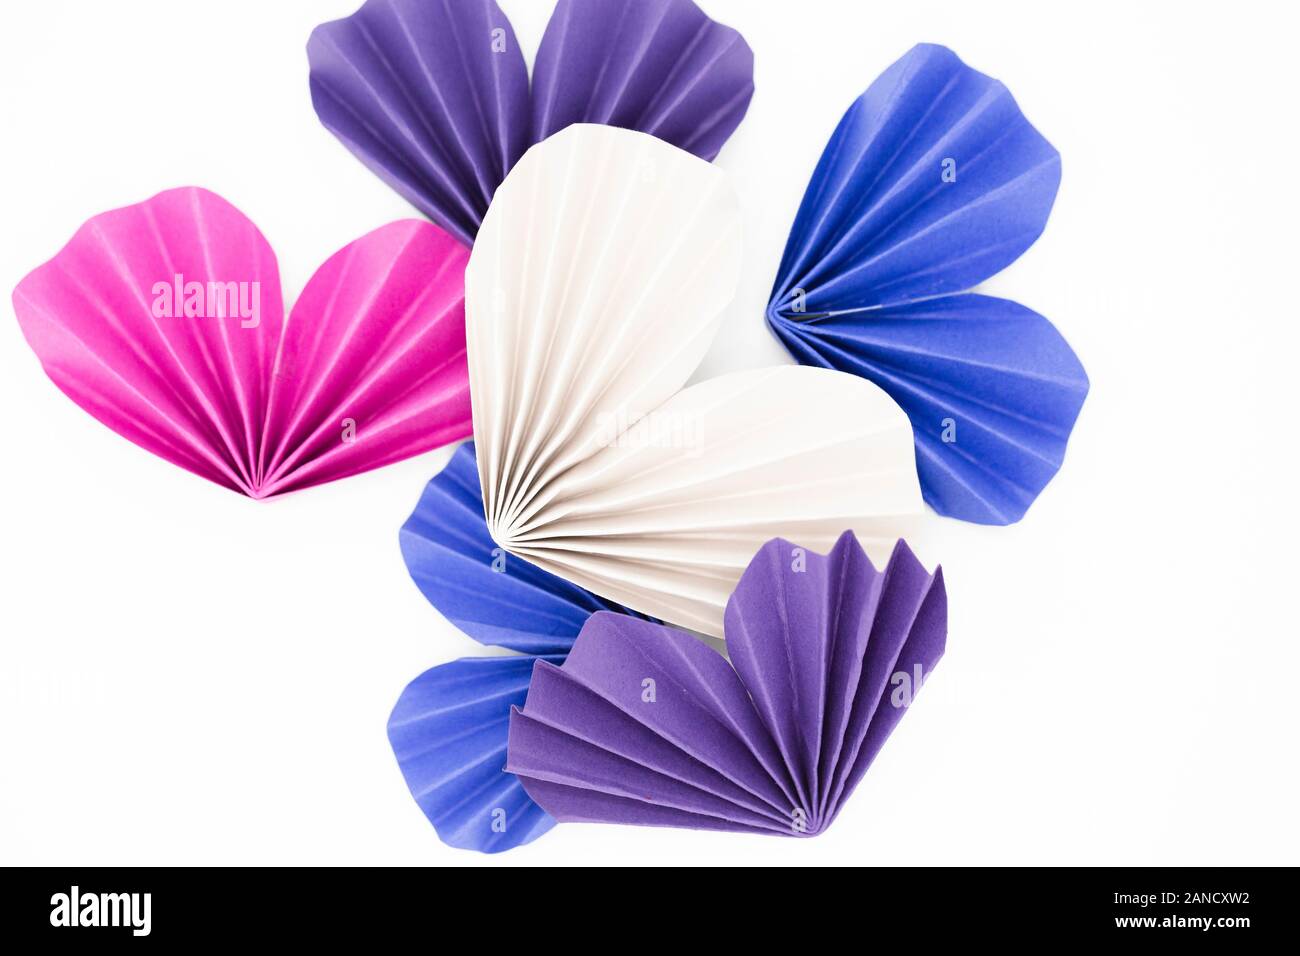 Coeurs d'origami de différentes couleurs sur fond blanc Banque D'Images